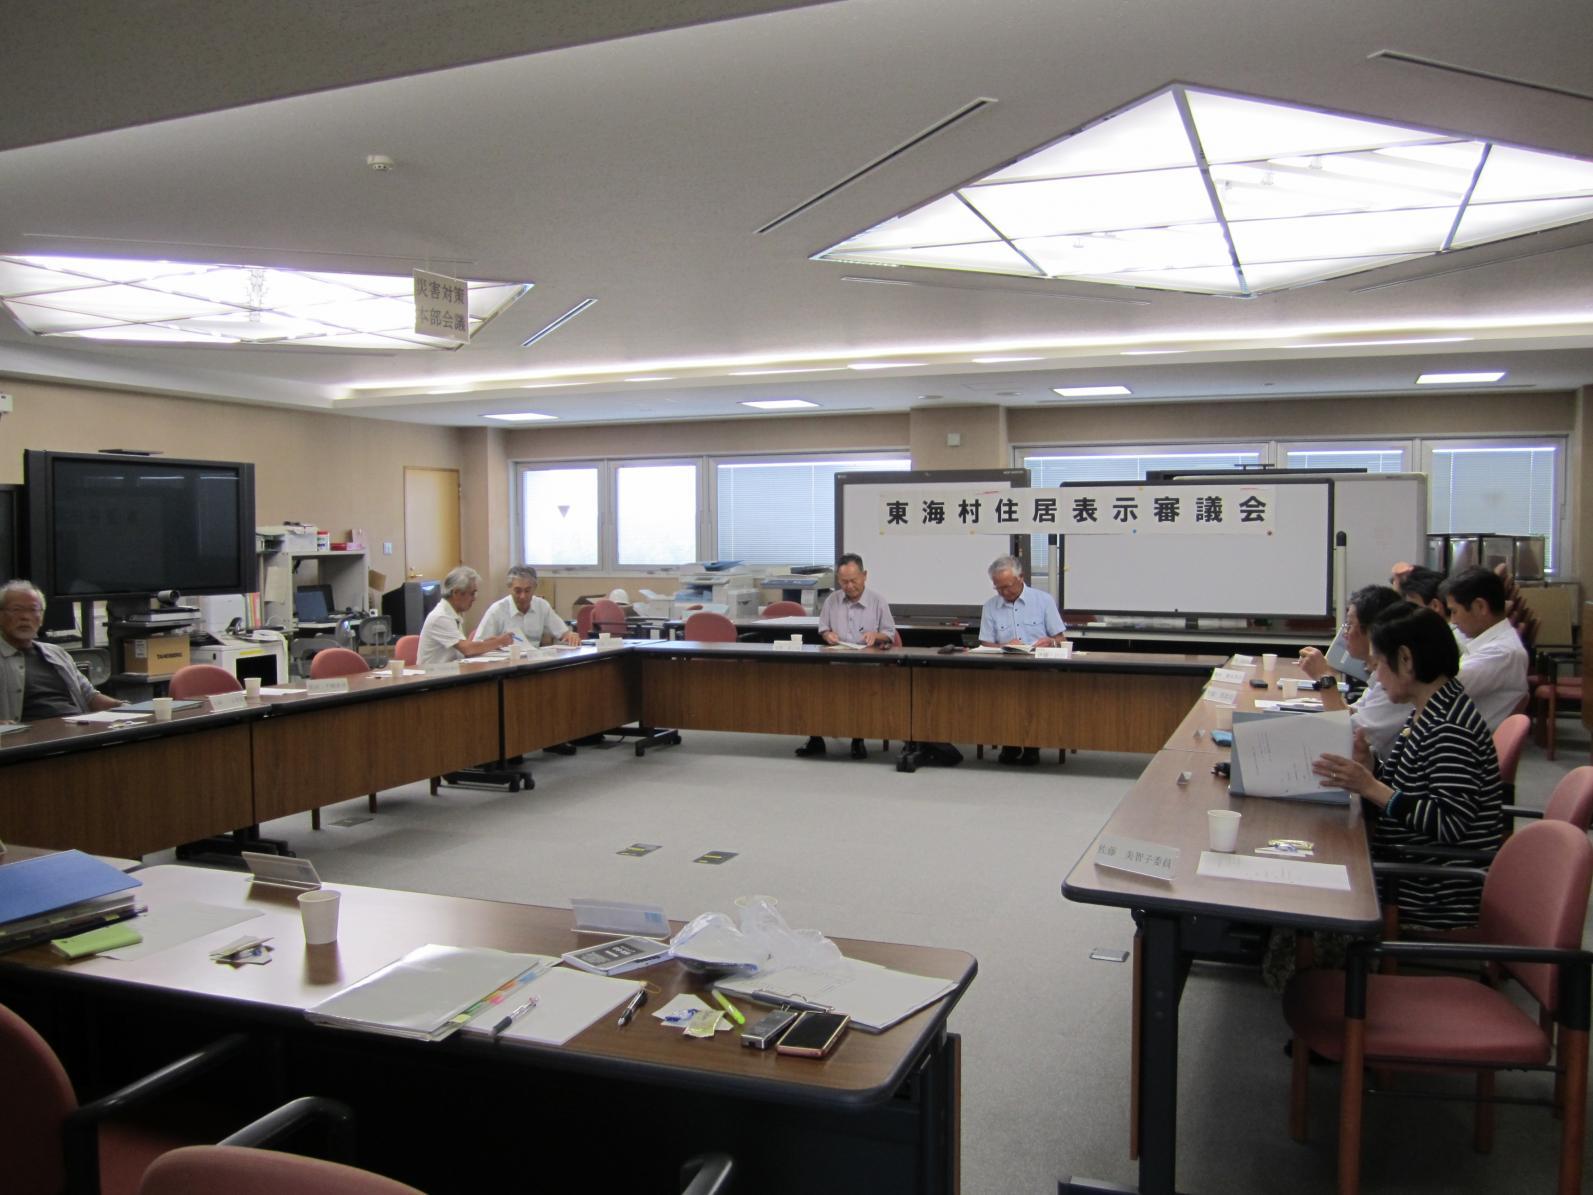 東海村住居表示審議会において、会議室にロの字型に並べられた机に向かって会議を進める参加者、9名ほどが写っている写真